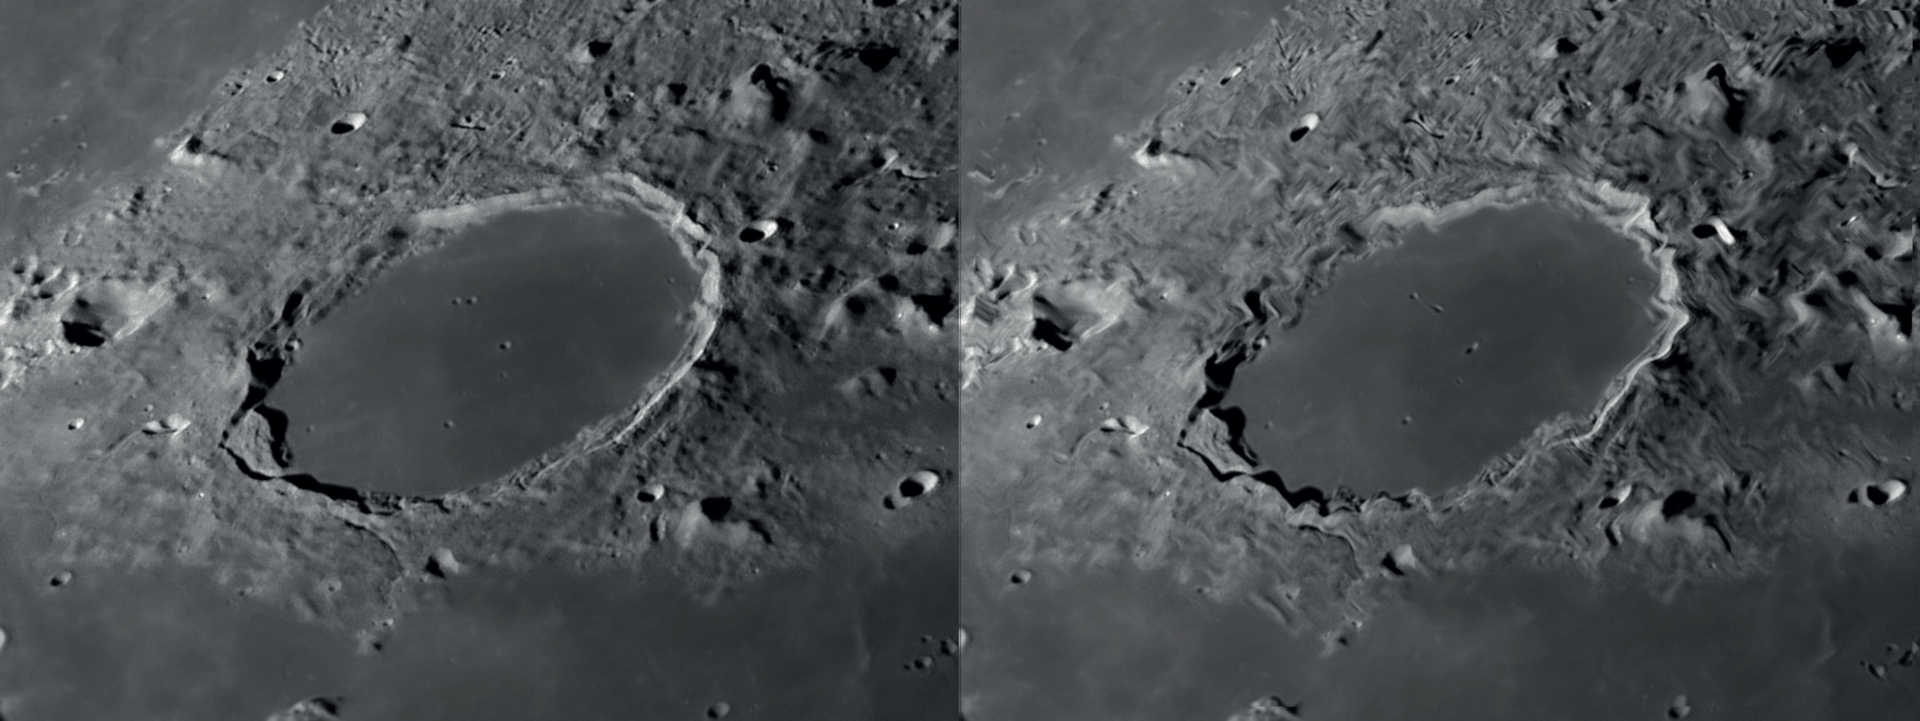 Avec un bon seeing, les détails se détectent très bien lorsque l’on observe la Lune et les planètes (à gauche). De lents mouvements de l’air ont pour conséquence une distorsion locale de l’image, tandis que les autres zones de l’image restent nettes (à droite). NASA/GSFC/Arizona State University/L. Spix